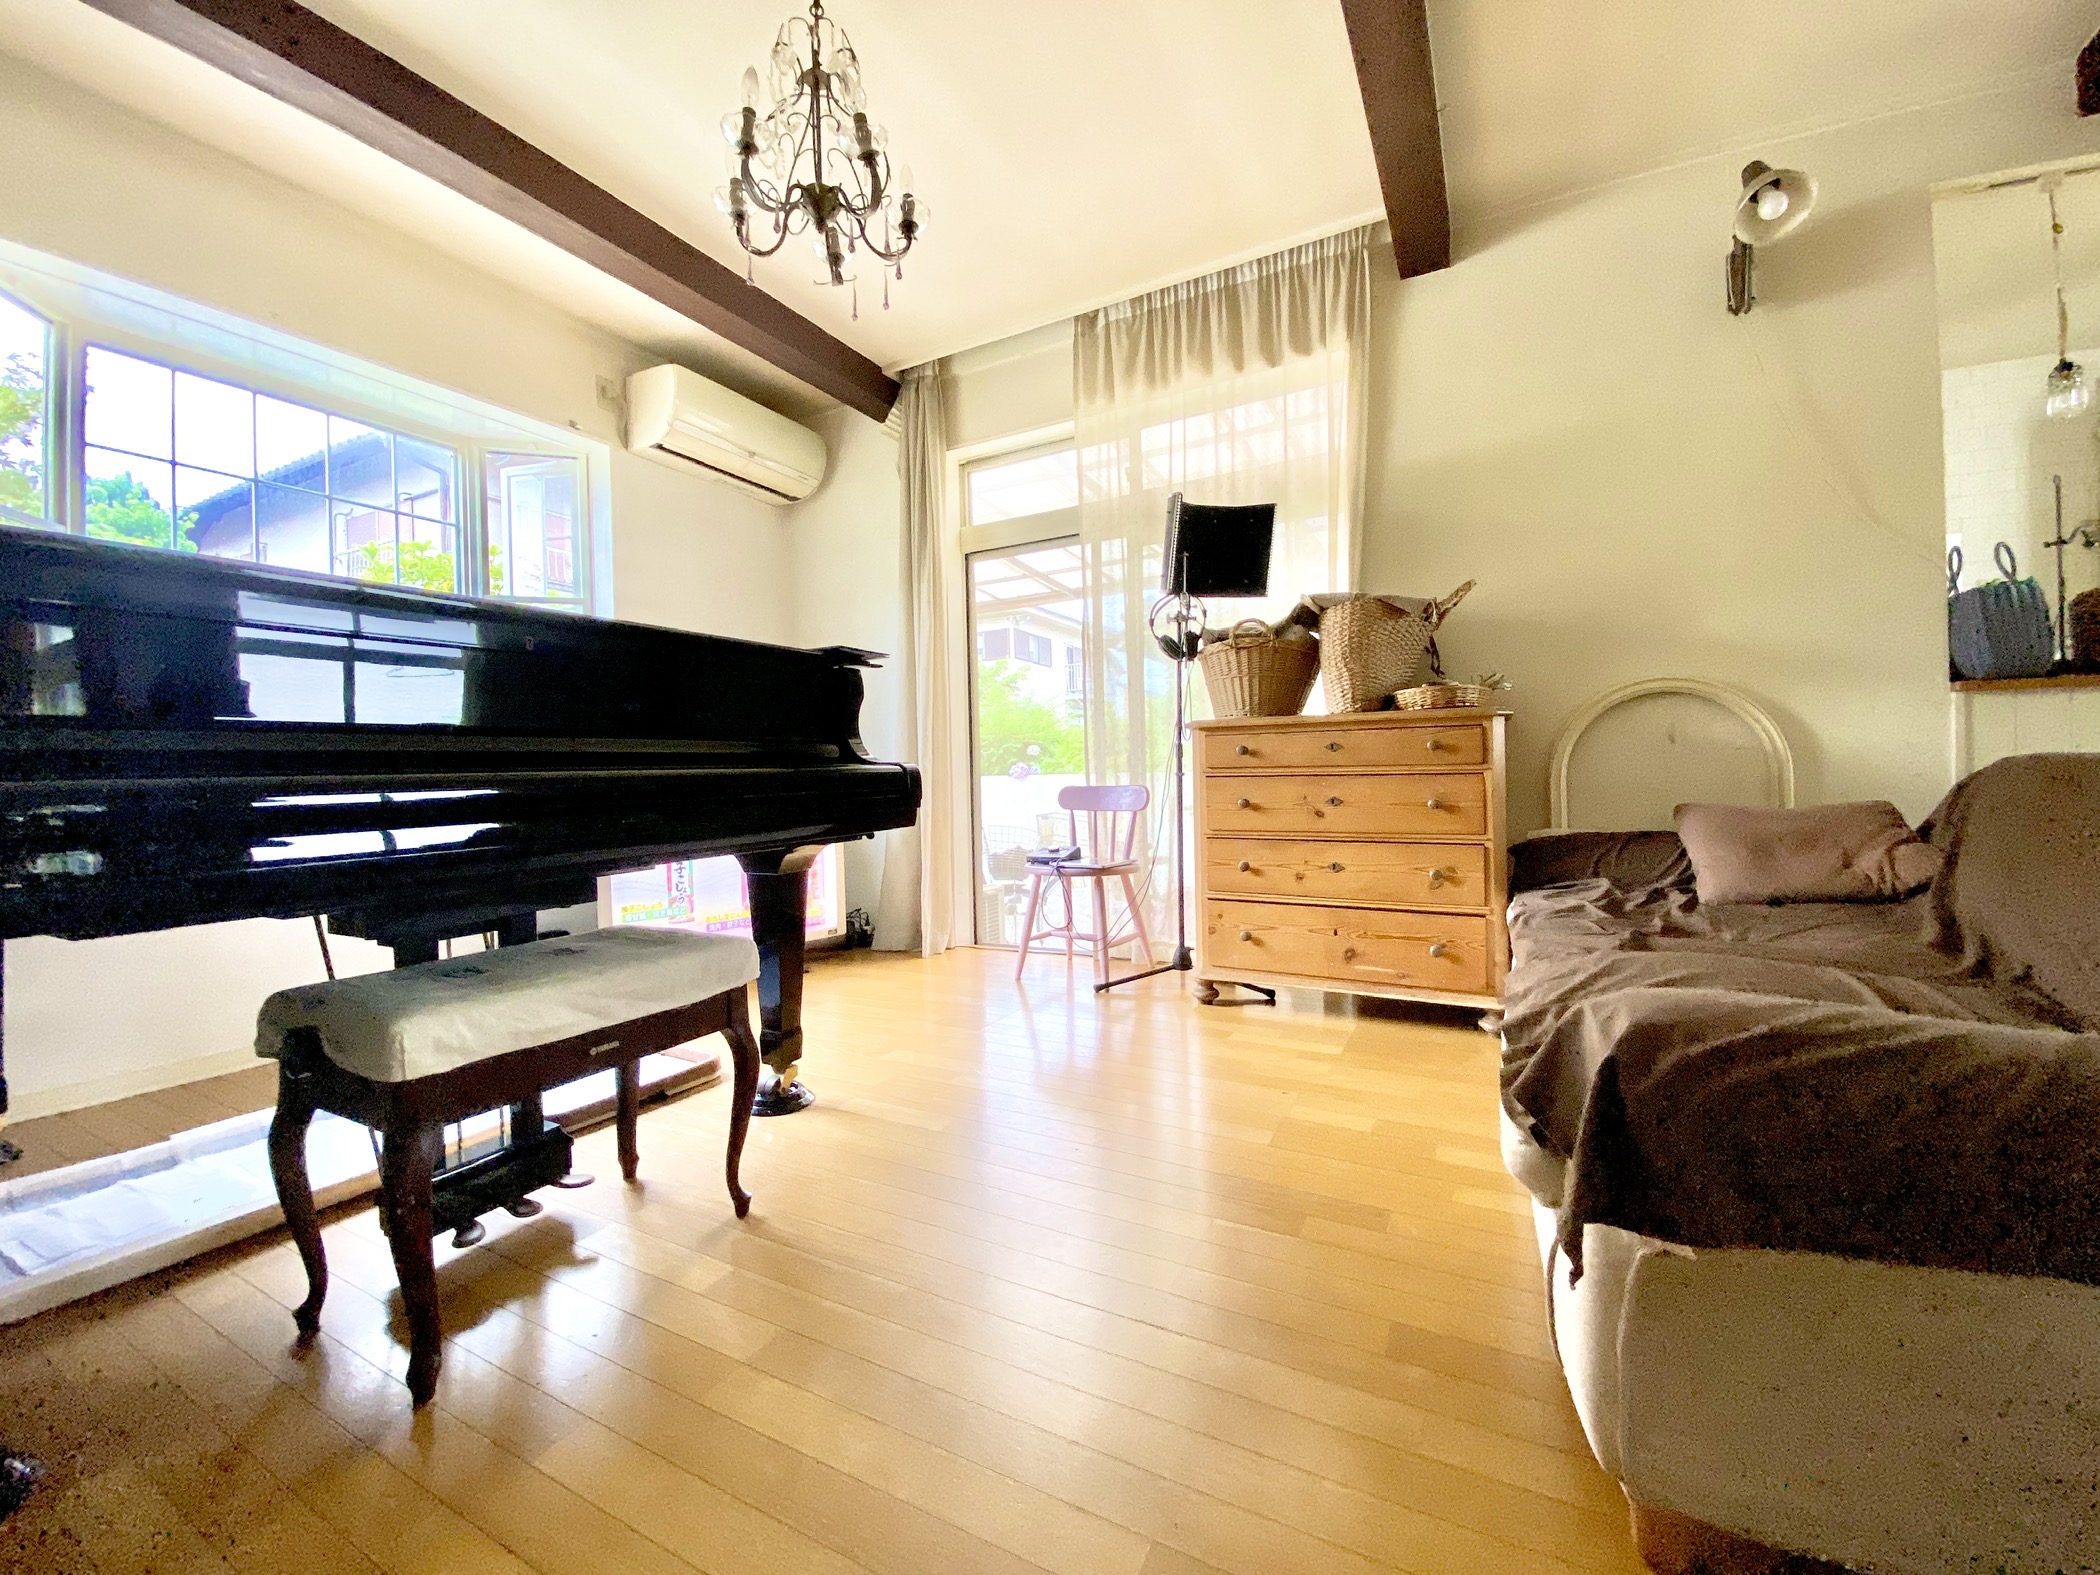 グランドピアノが似合うアンティーク調家具のあるリビング